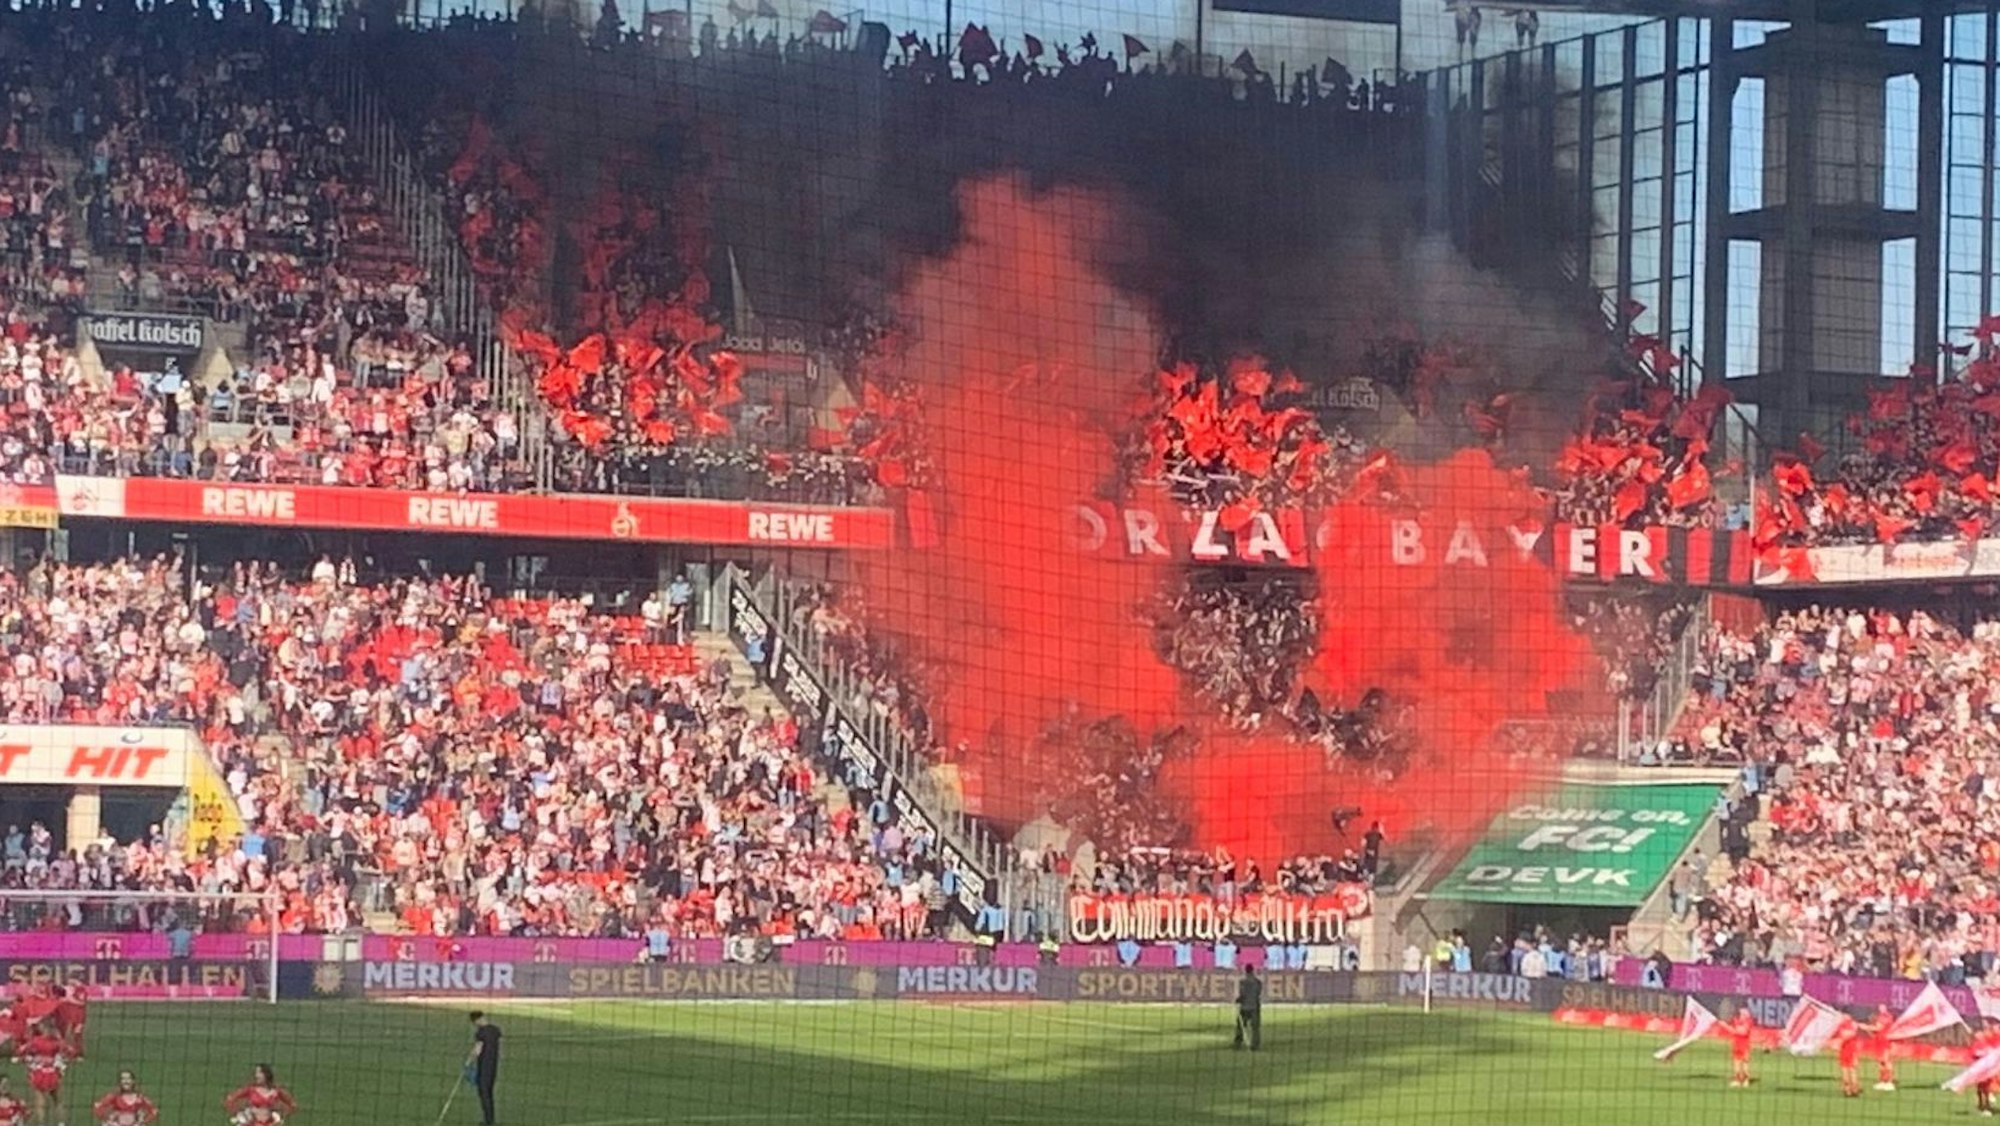 Pyrotechnik wurde beim Derby im Stadion abgebrannt.